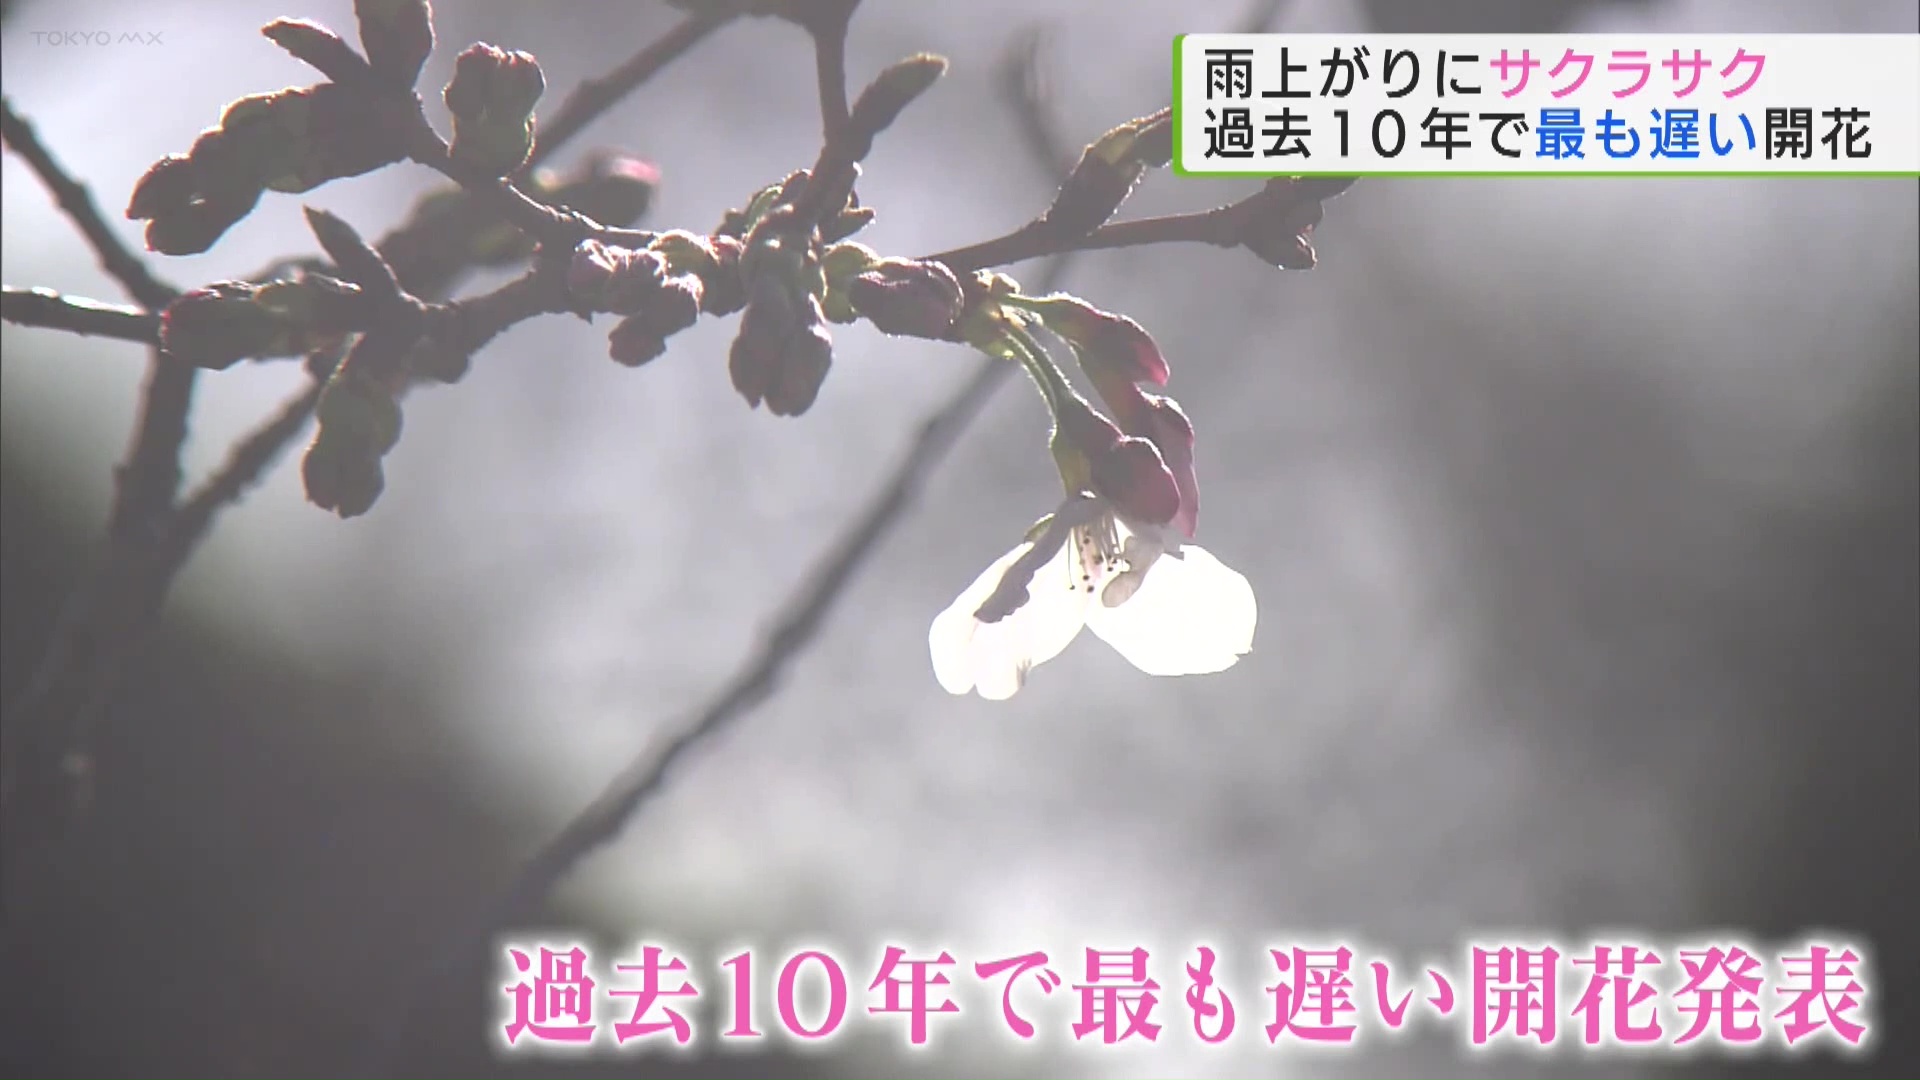 待ちわびたという人もいらっしゃるのではないでしょうか。気象庁が東京都心の桜の開花を発表しました。去年より15日遅く、過去10年で最も遅い開花となりました。